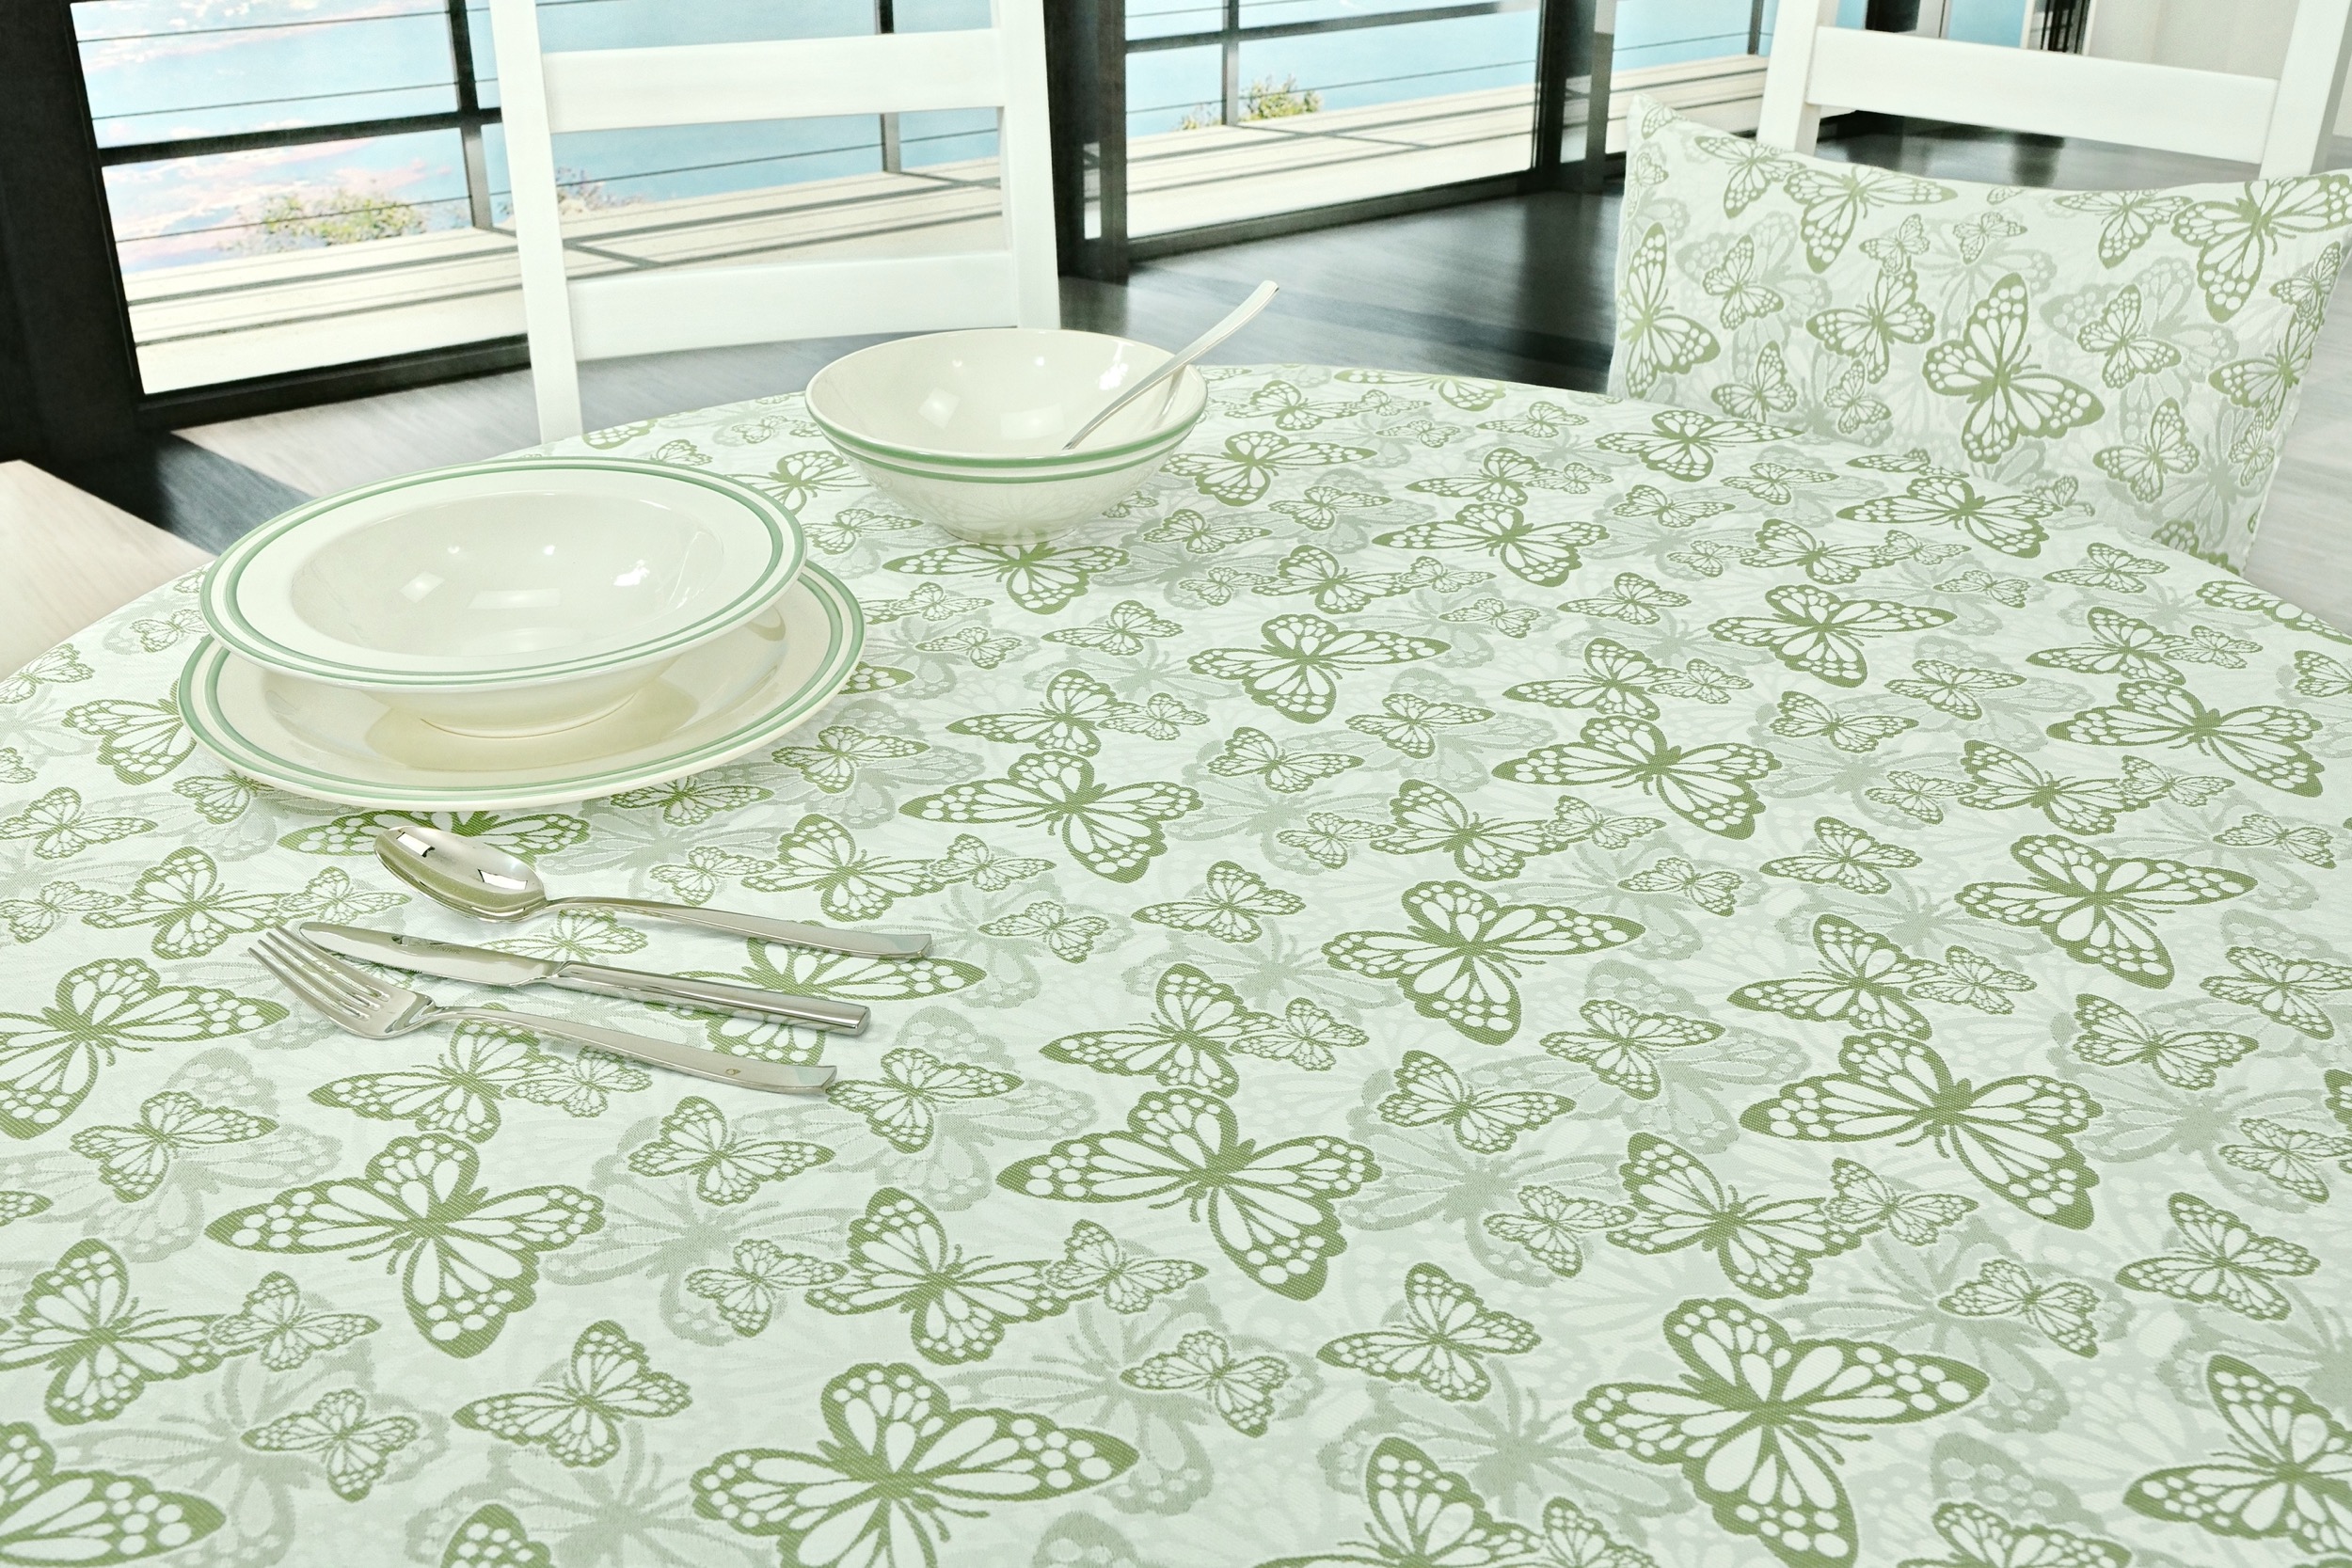 Fleckgeschützte Tischdecke Weiß Grün Muster Springtime Breite 120 cm OVAL